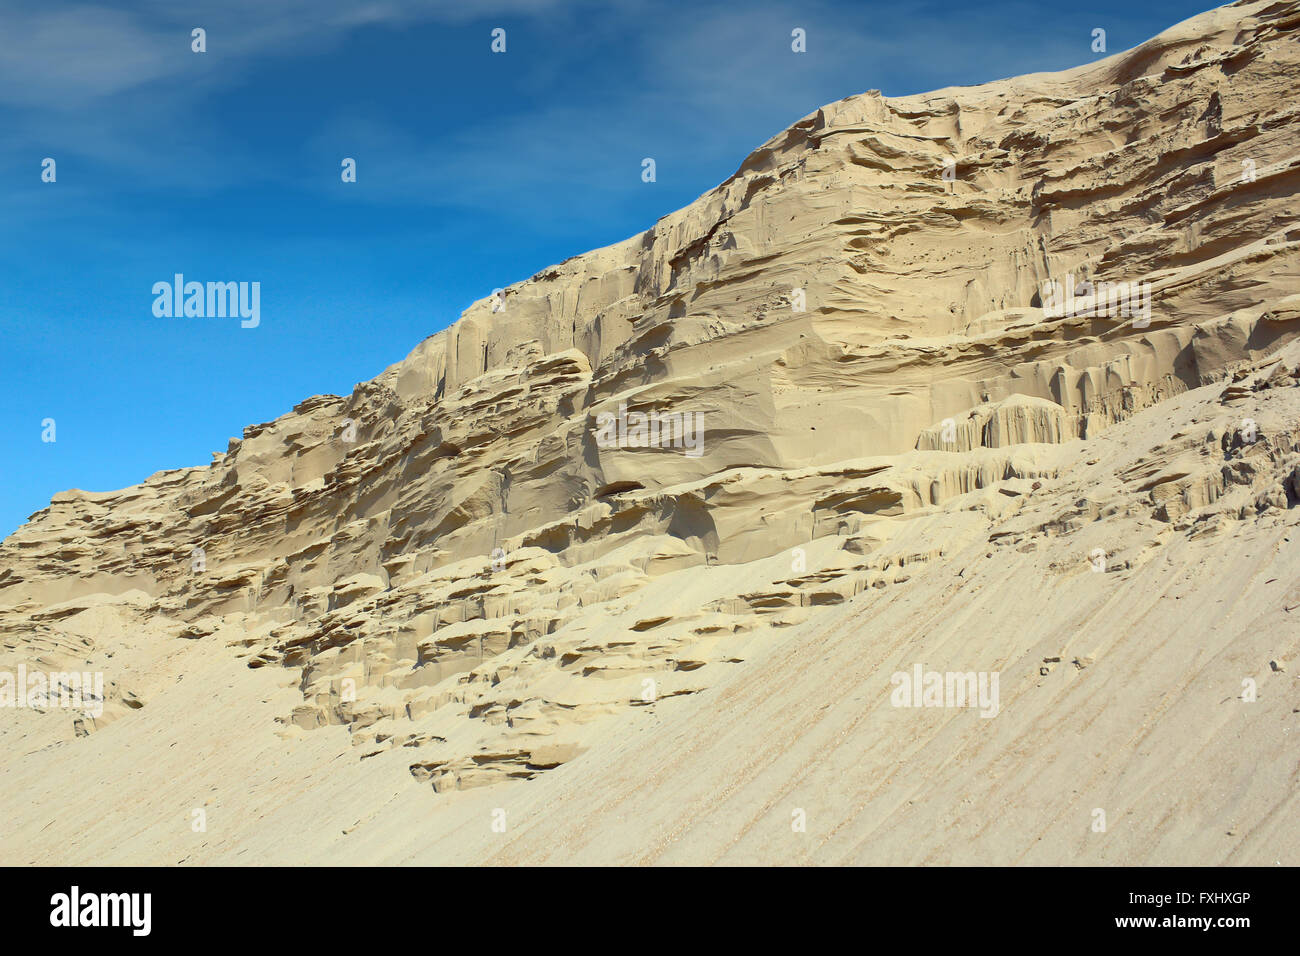 desert sand hill Stock Photo